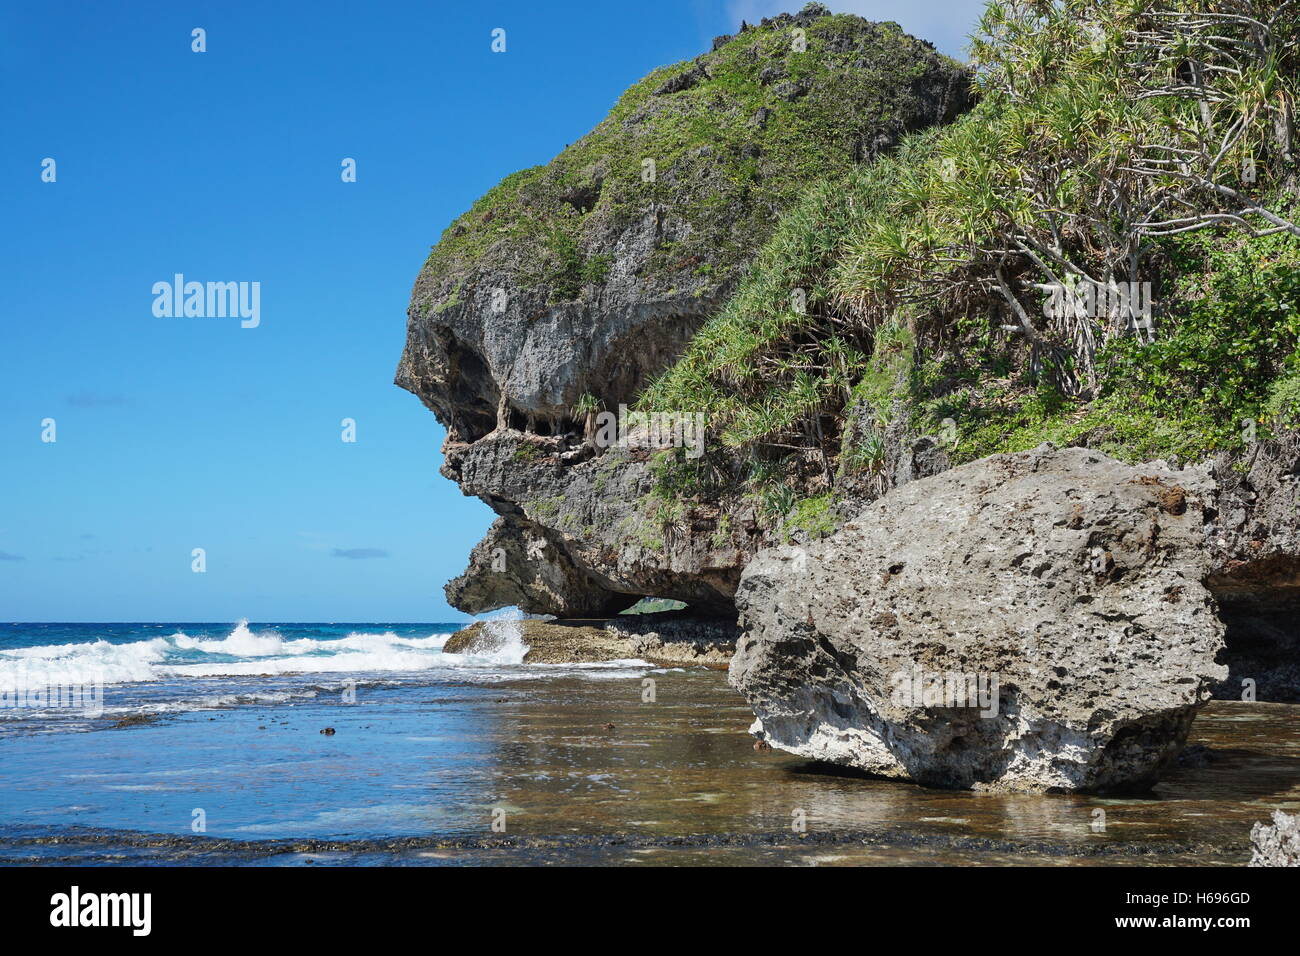 Erodierte Felsenküste mit Naturgebilde, das aussieht wie ein Monster Kopf, Rurutu Insel, Pazifik, Französisch-Polynesien Stockfoto